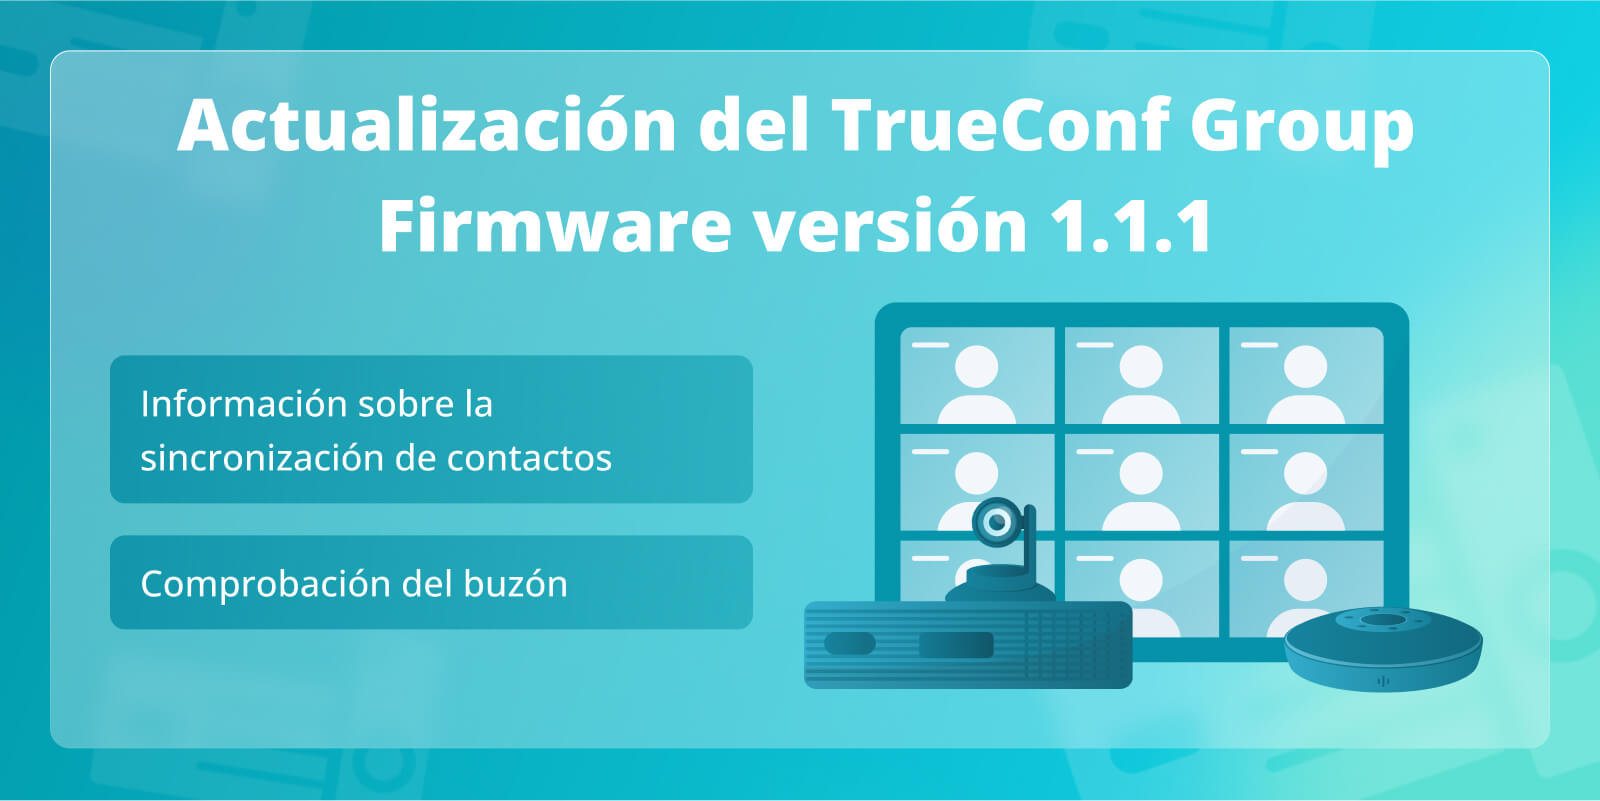 TrueConf Group 1.1.1: Comprobación del buzón e información sobre sincronización de contactos con el TrueConf Server y el TrueConf MCU 2